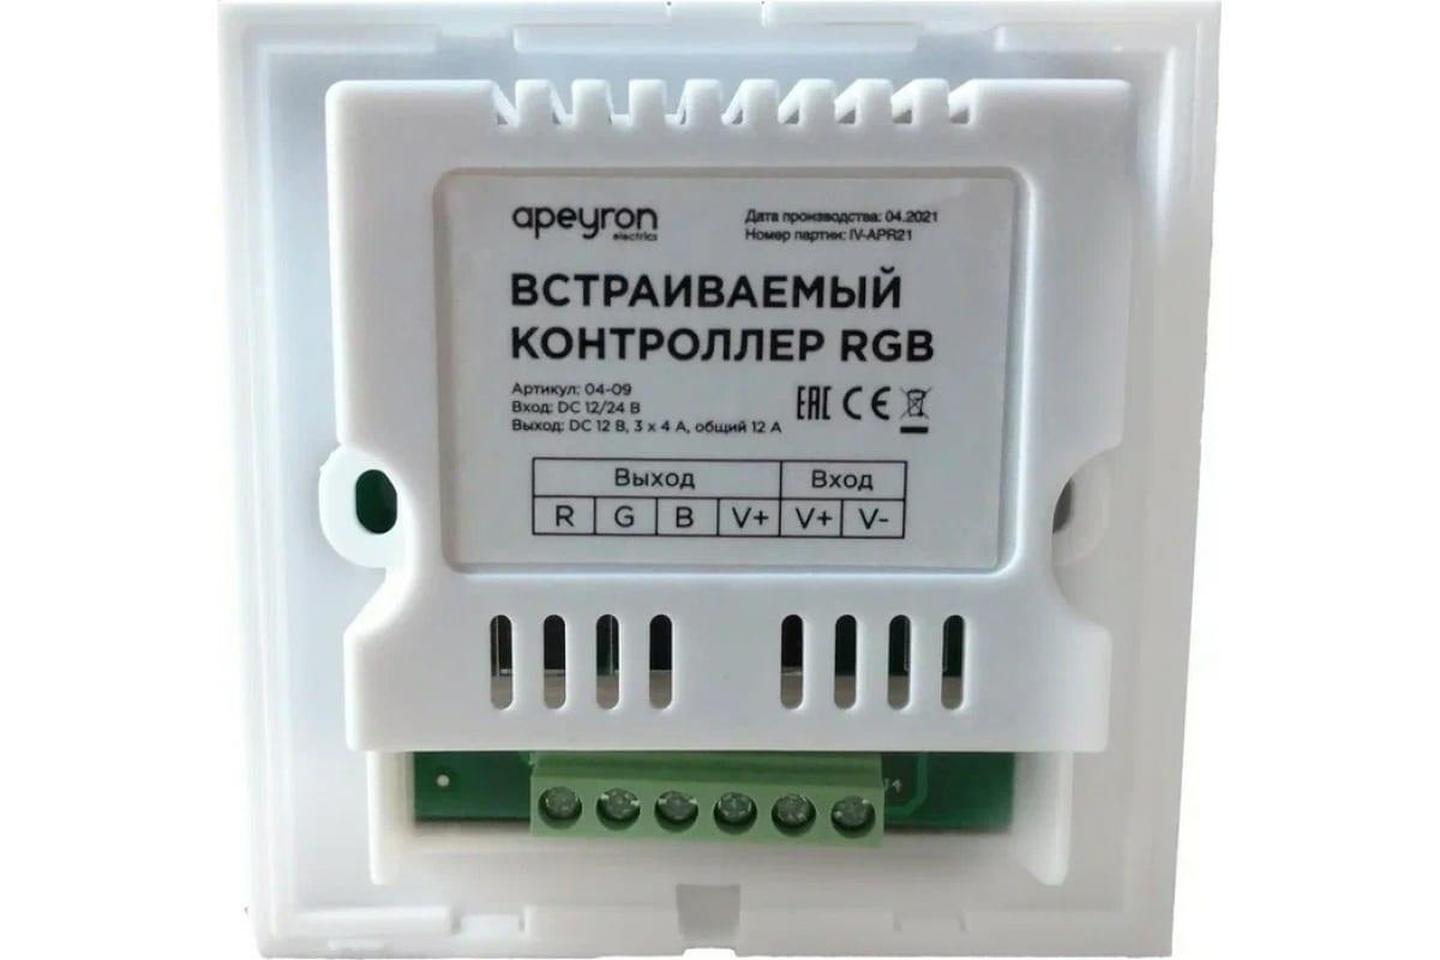 04-09 Контроллер RGB 12В, 144 Вт,встраиваемый с БЕЛОЙ многоцветной сенсорной панелью, 86*86*34 мм, ш